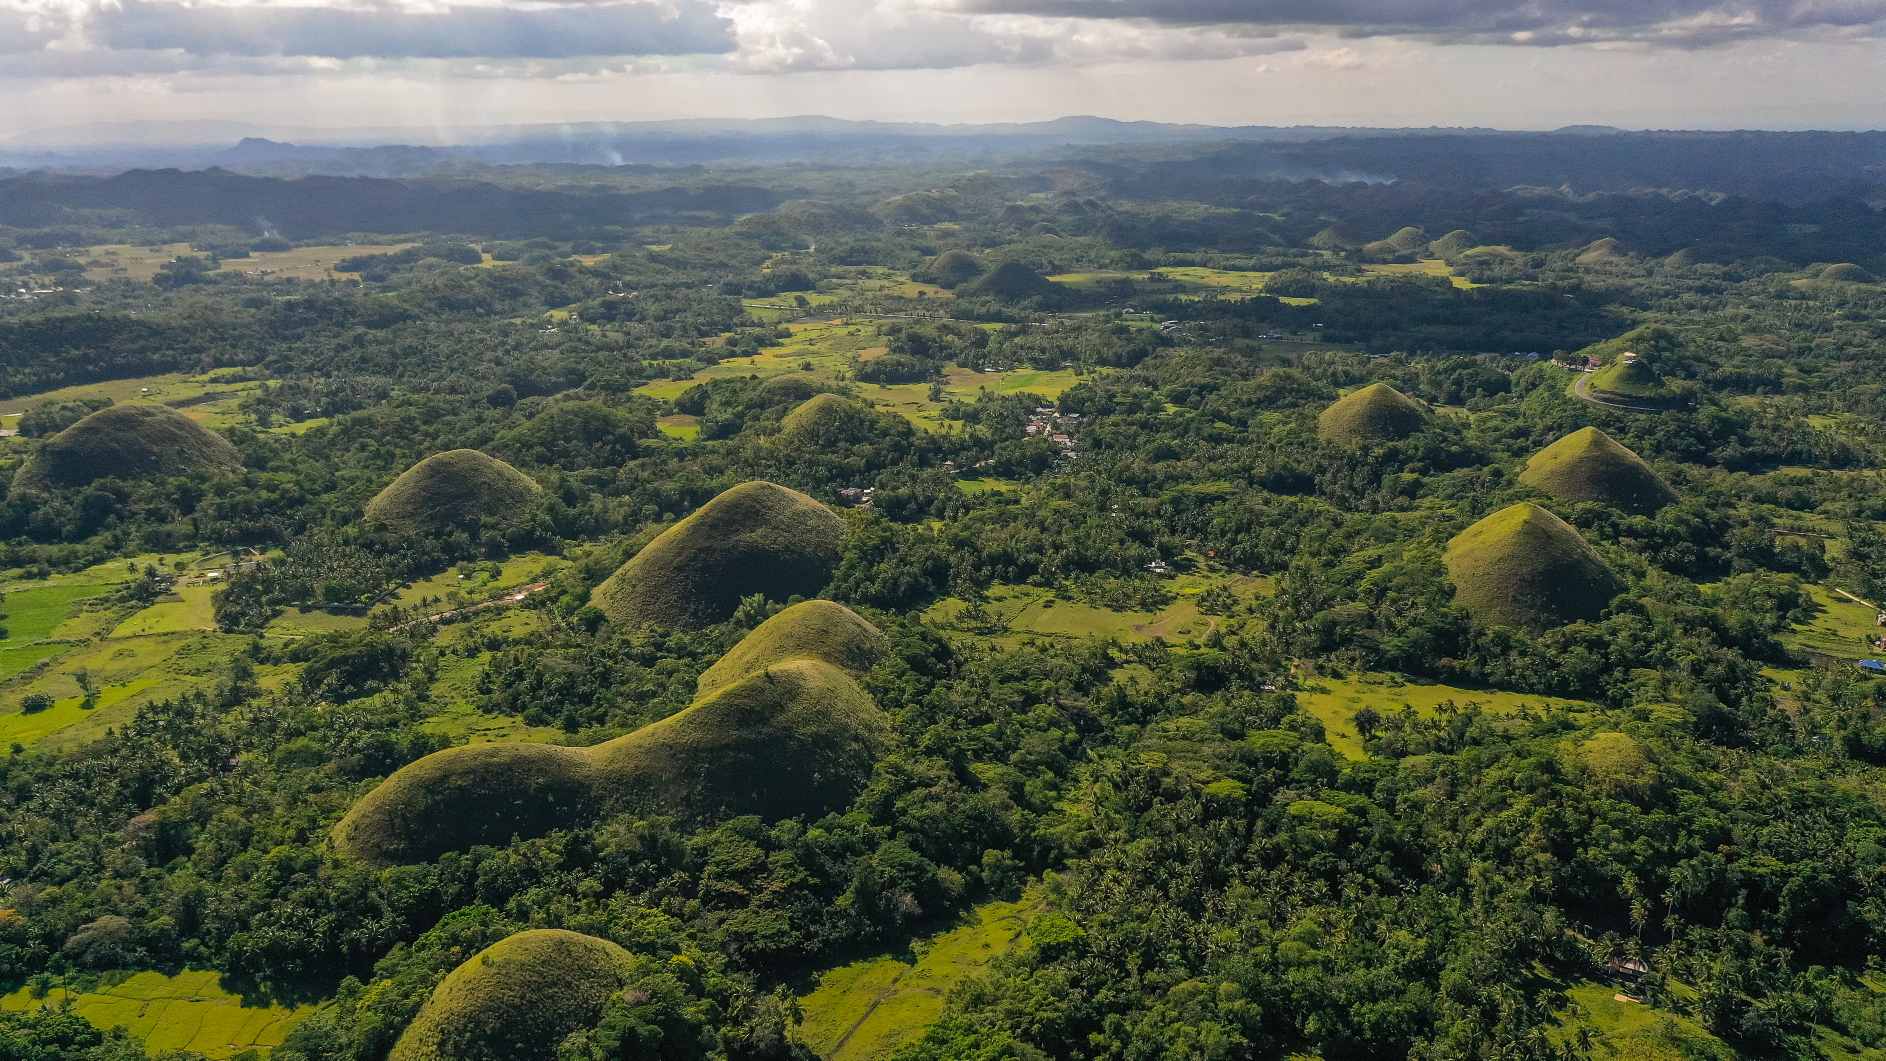 גבעות בין אדמות חקלאיות. ציון דרך טבעי של Chocolate Hills, האי בוהול, פיליפינים. © אשראי תמונה: אלכסיי קורניליב | מורשה מ-DreamsTime, ID:223476330